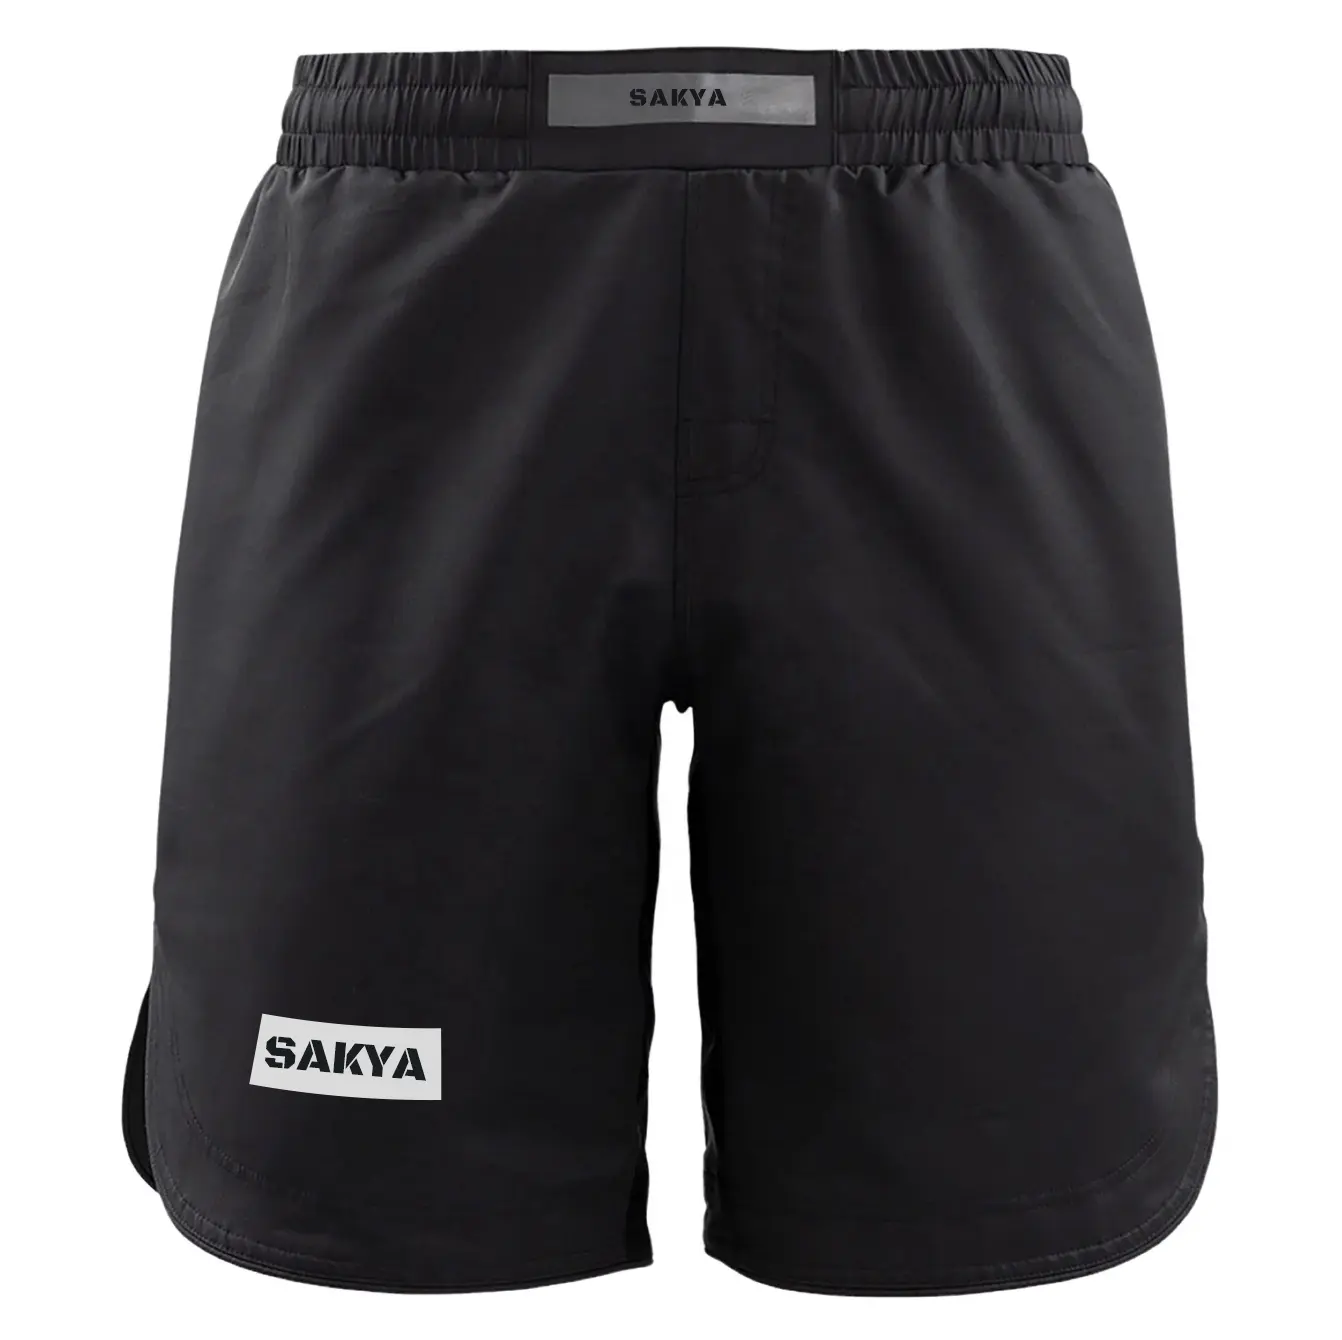 Pantalones cortos de boxeo personalizados para hombres, ropa de boxeo youthsublimación, Jiu Jitsu Bjj, lucha MMA